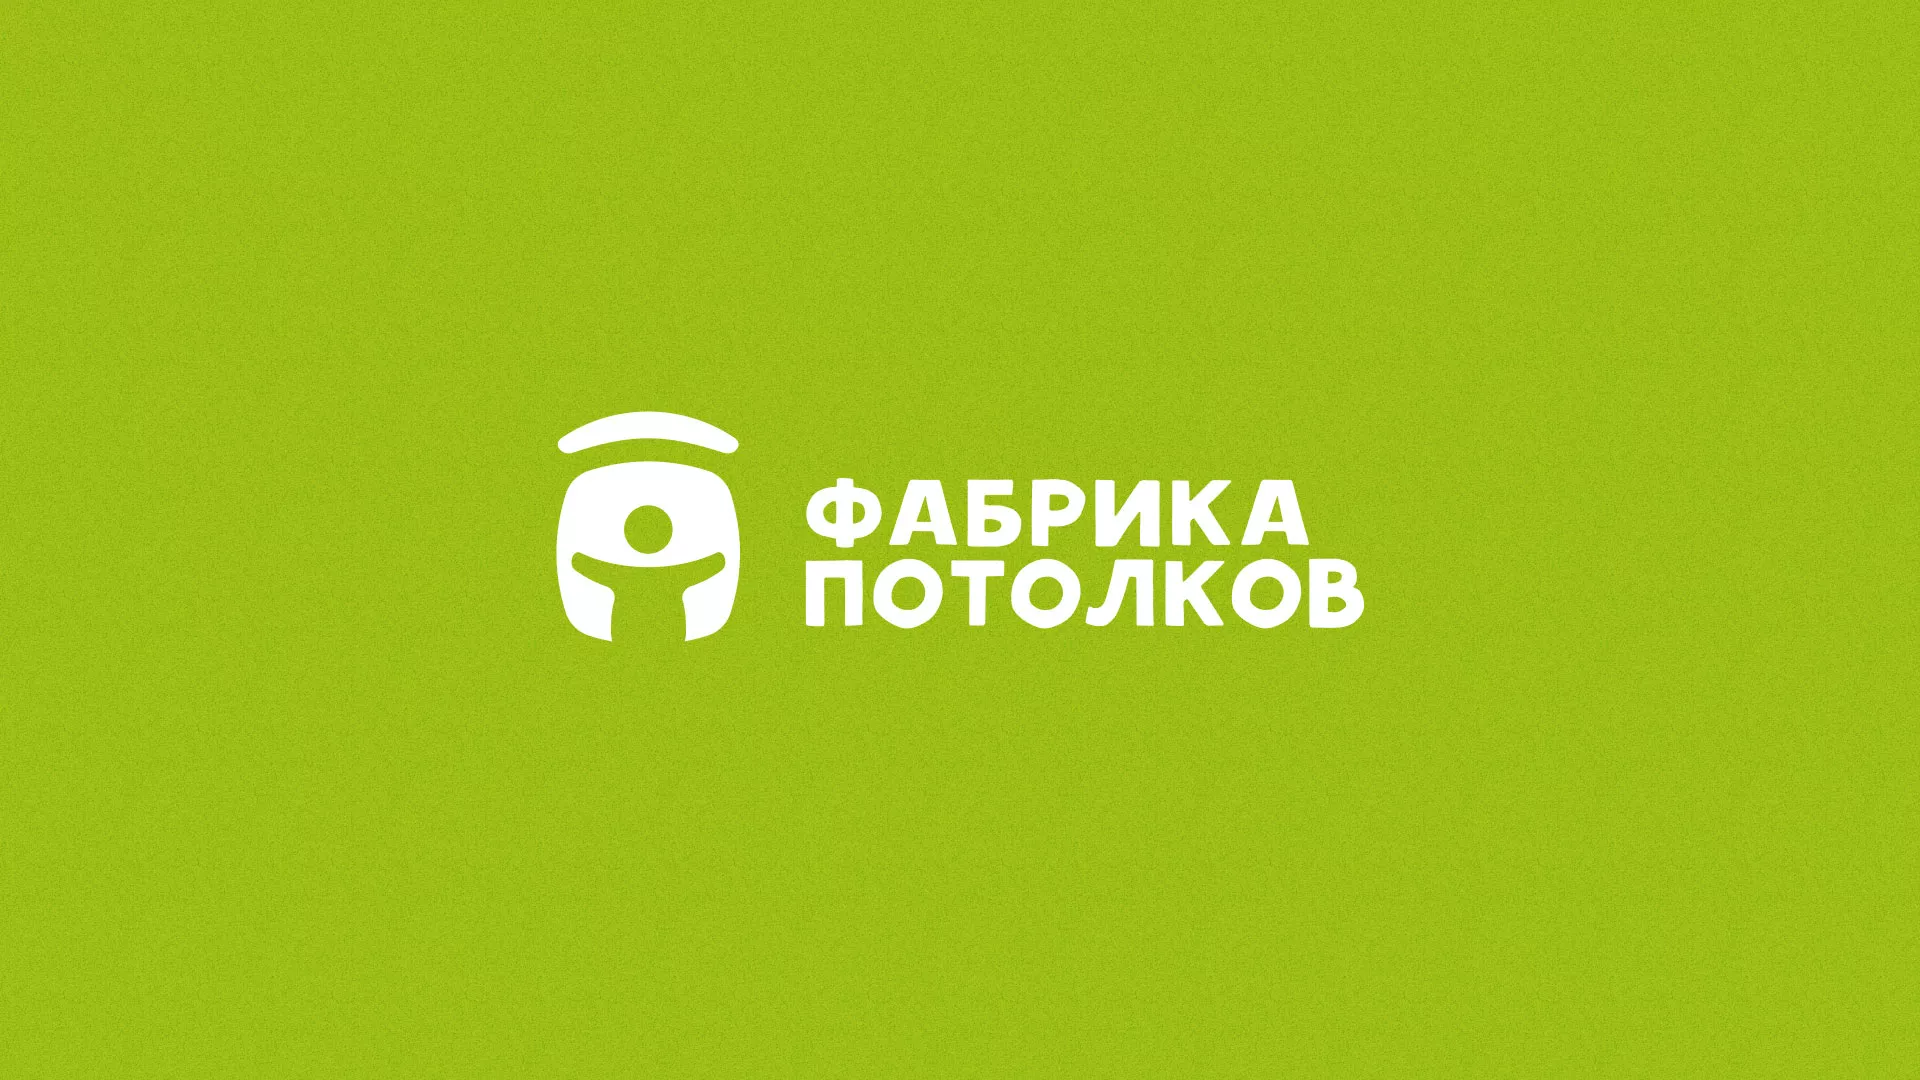 Разработка логотипа для производства натяжных потолков в Злынке